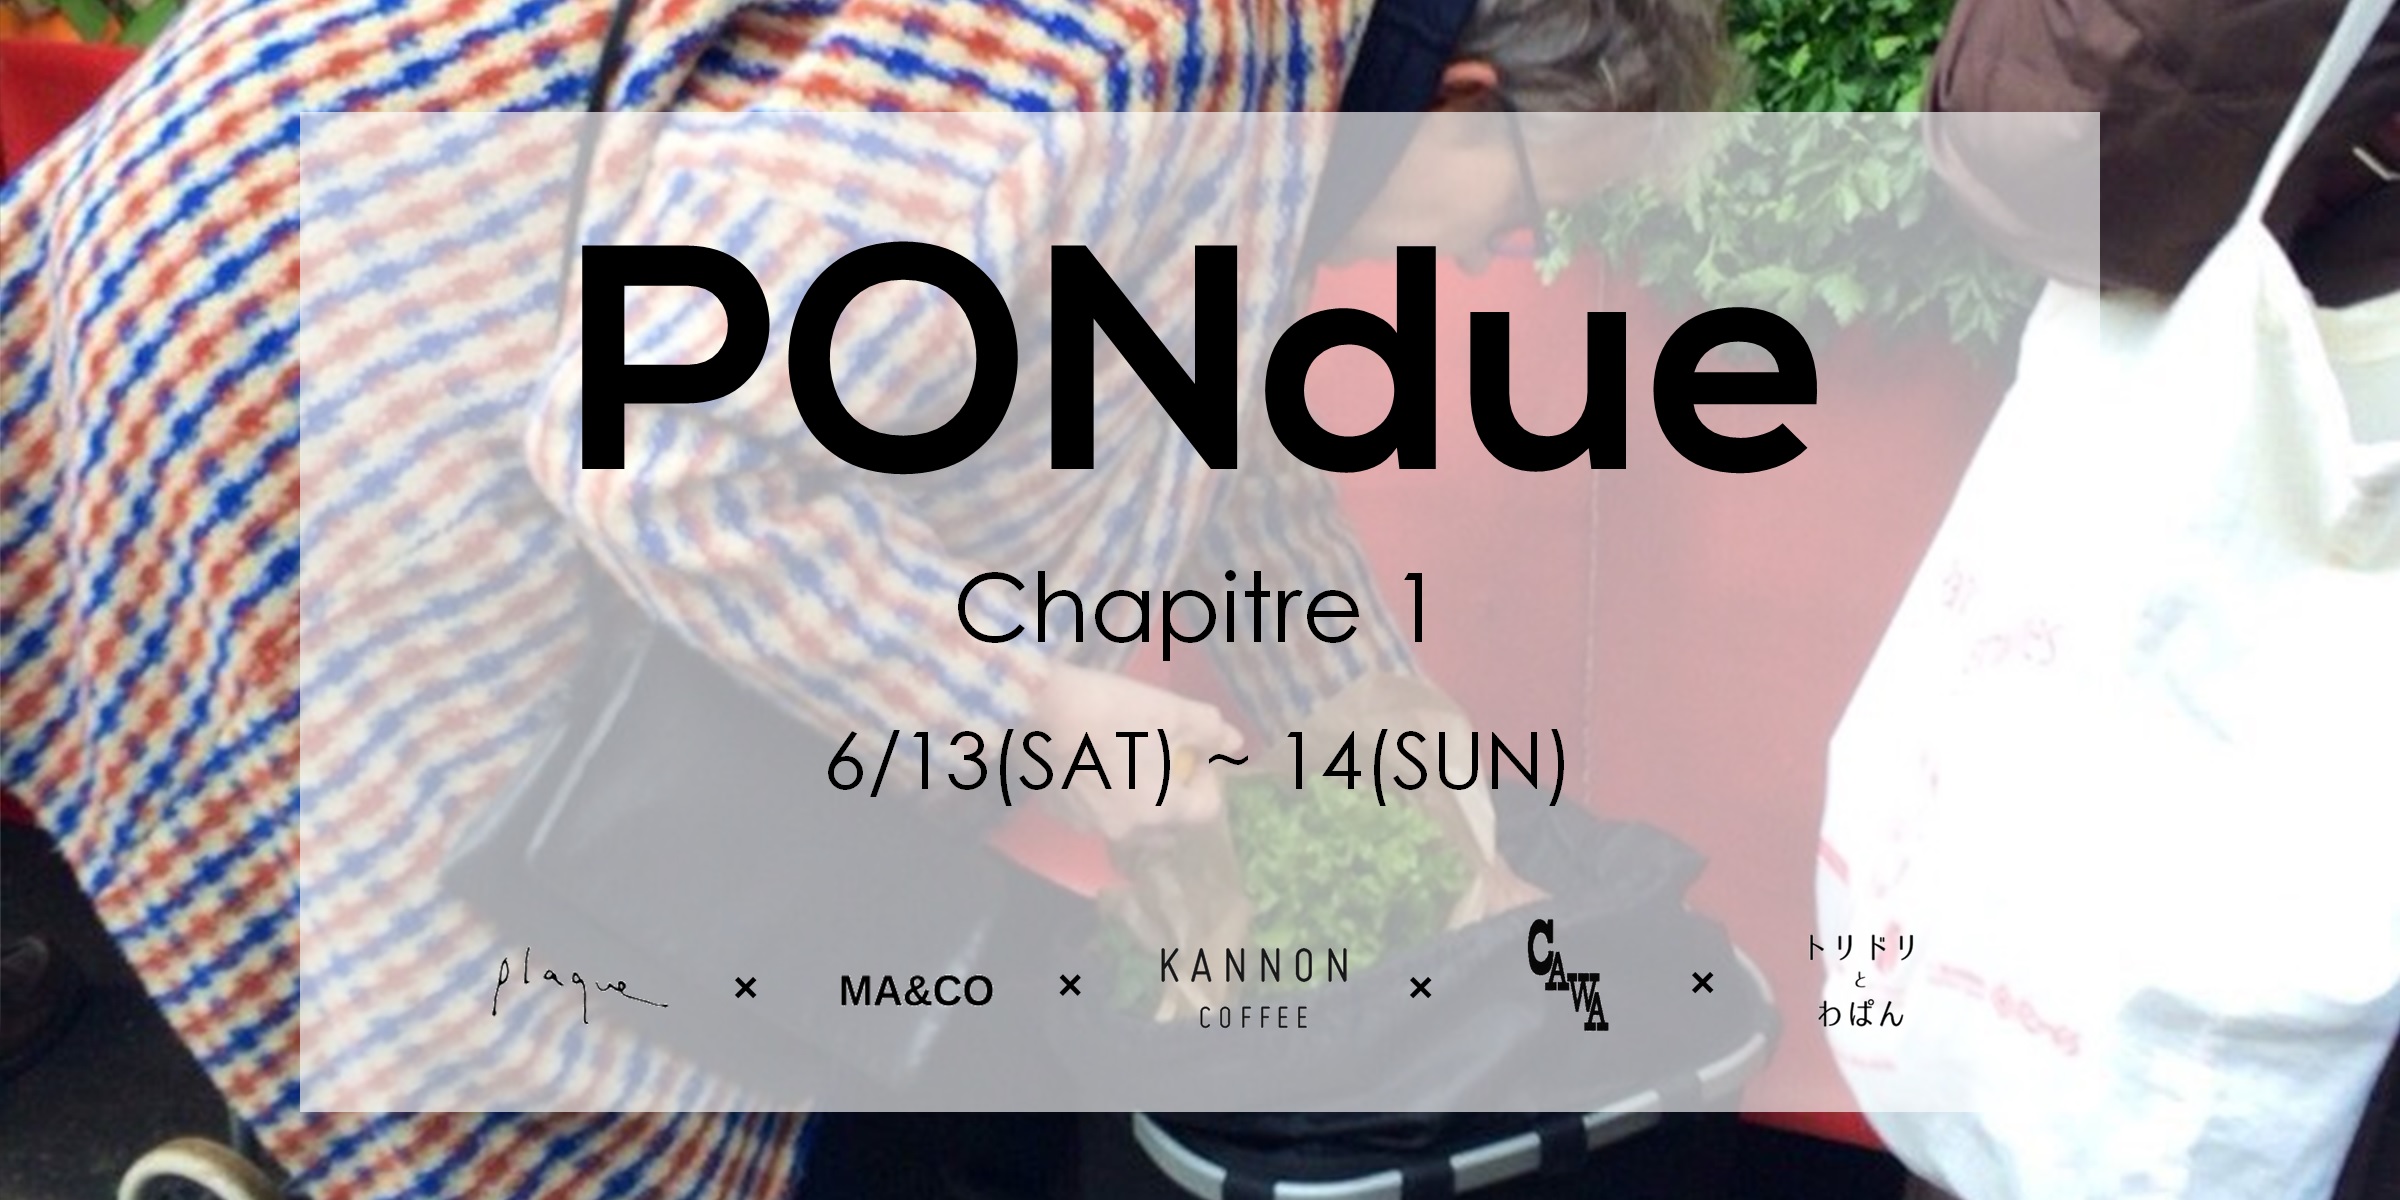 PONdue / Chapitre 1